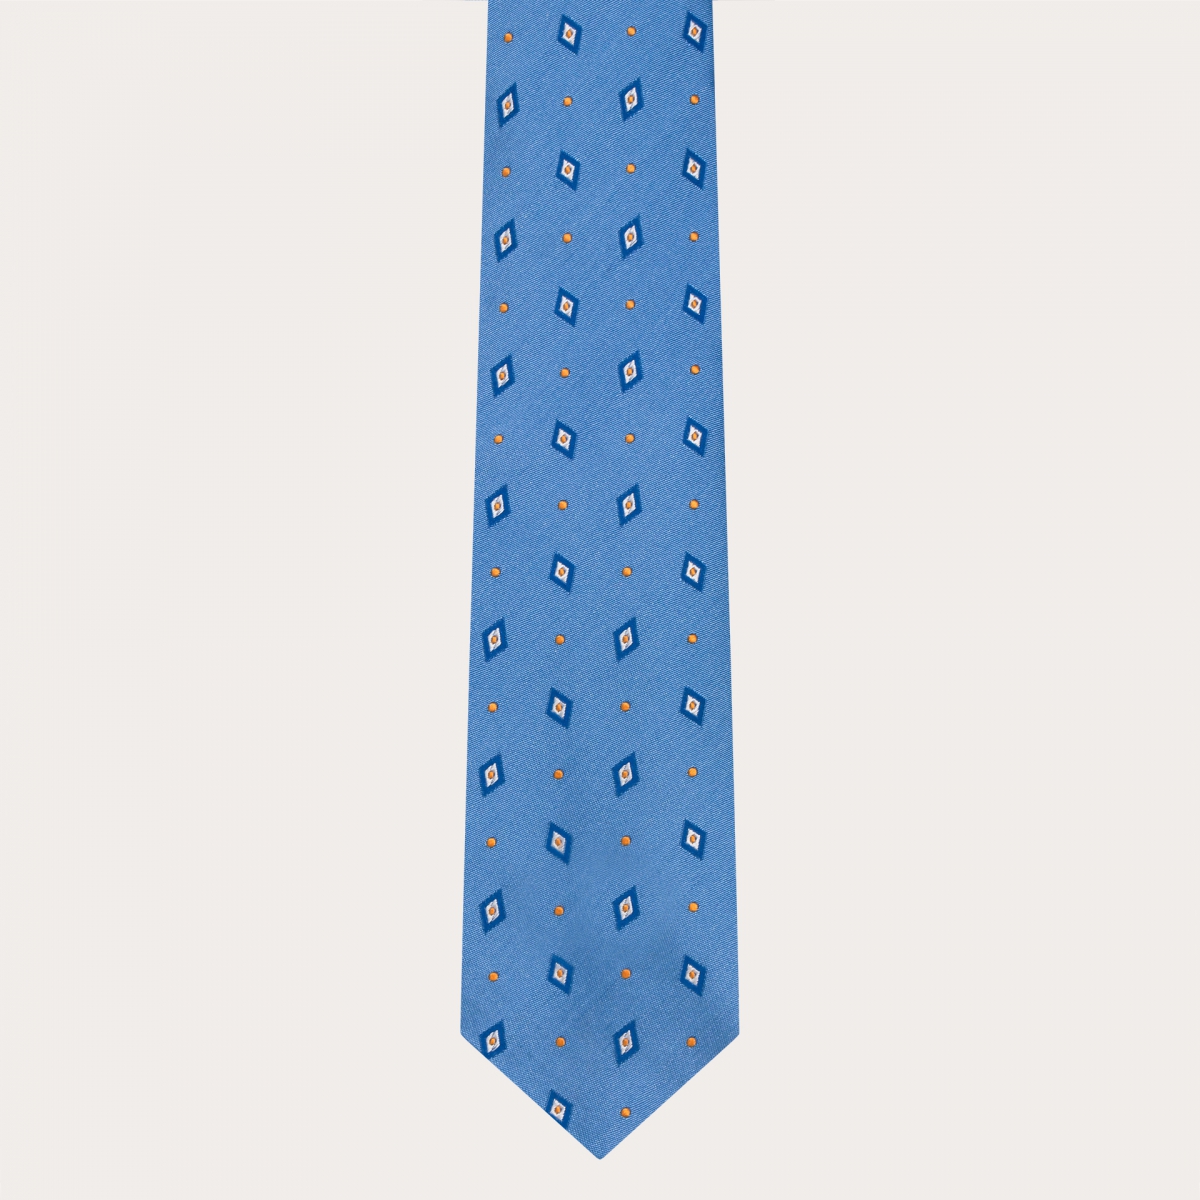 Jacquard-Seidenkrawatte für Anzug, hellblau mit blauen und gelben Rauten und Punkten